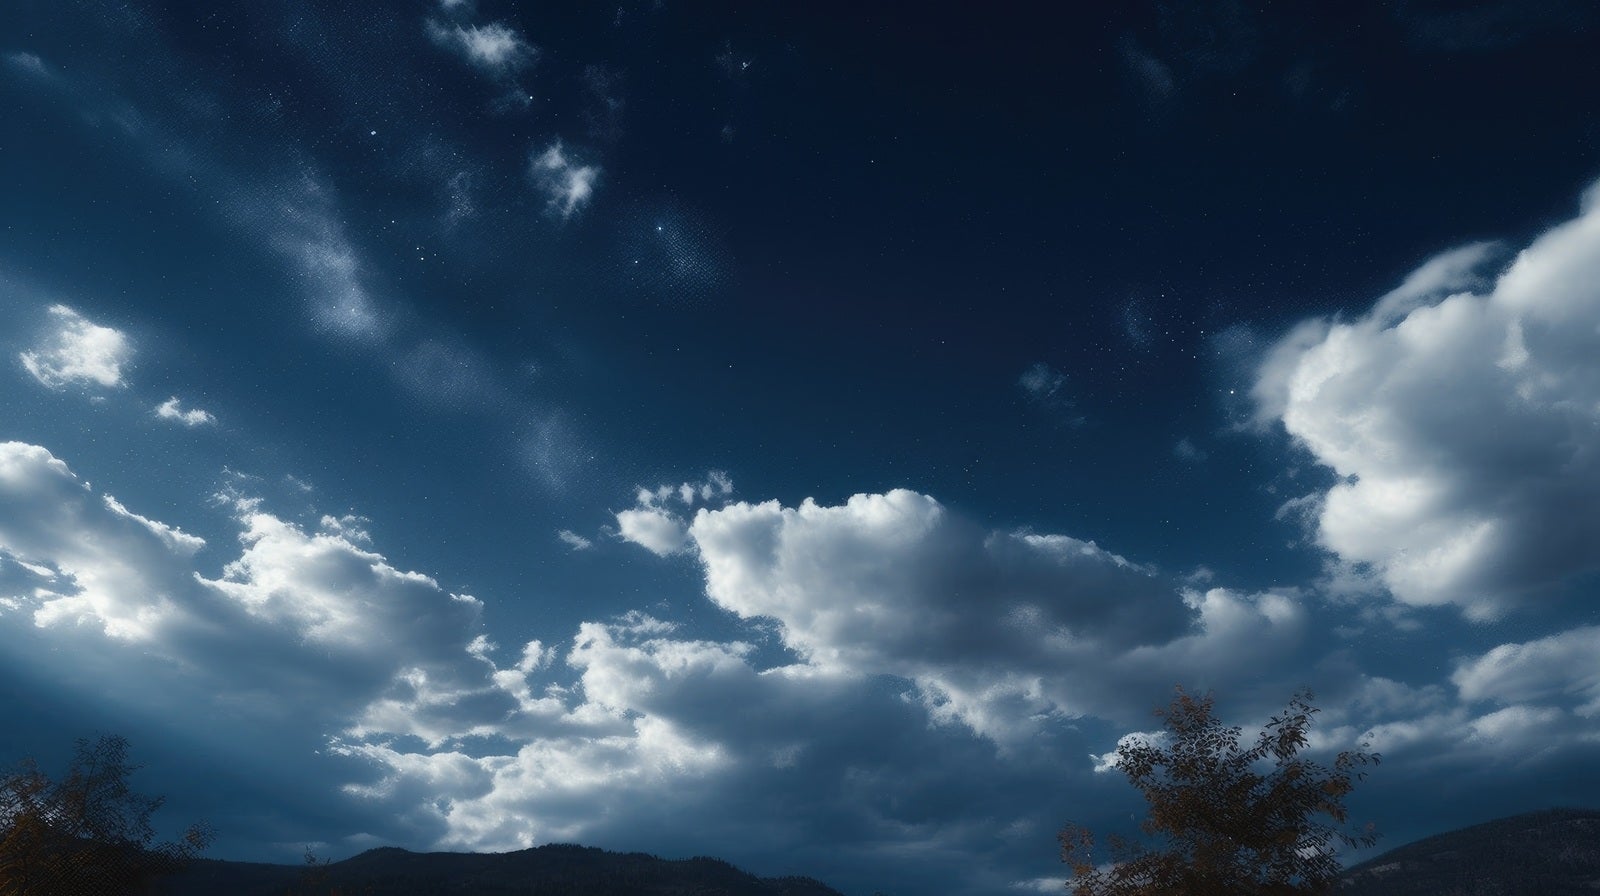 「雲の合間から見える星空」の写真